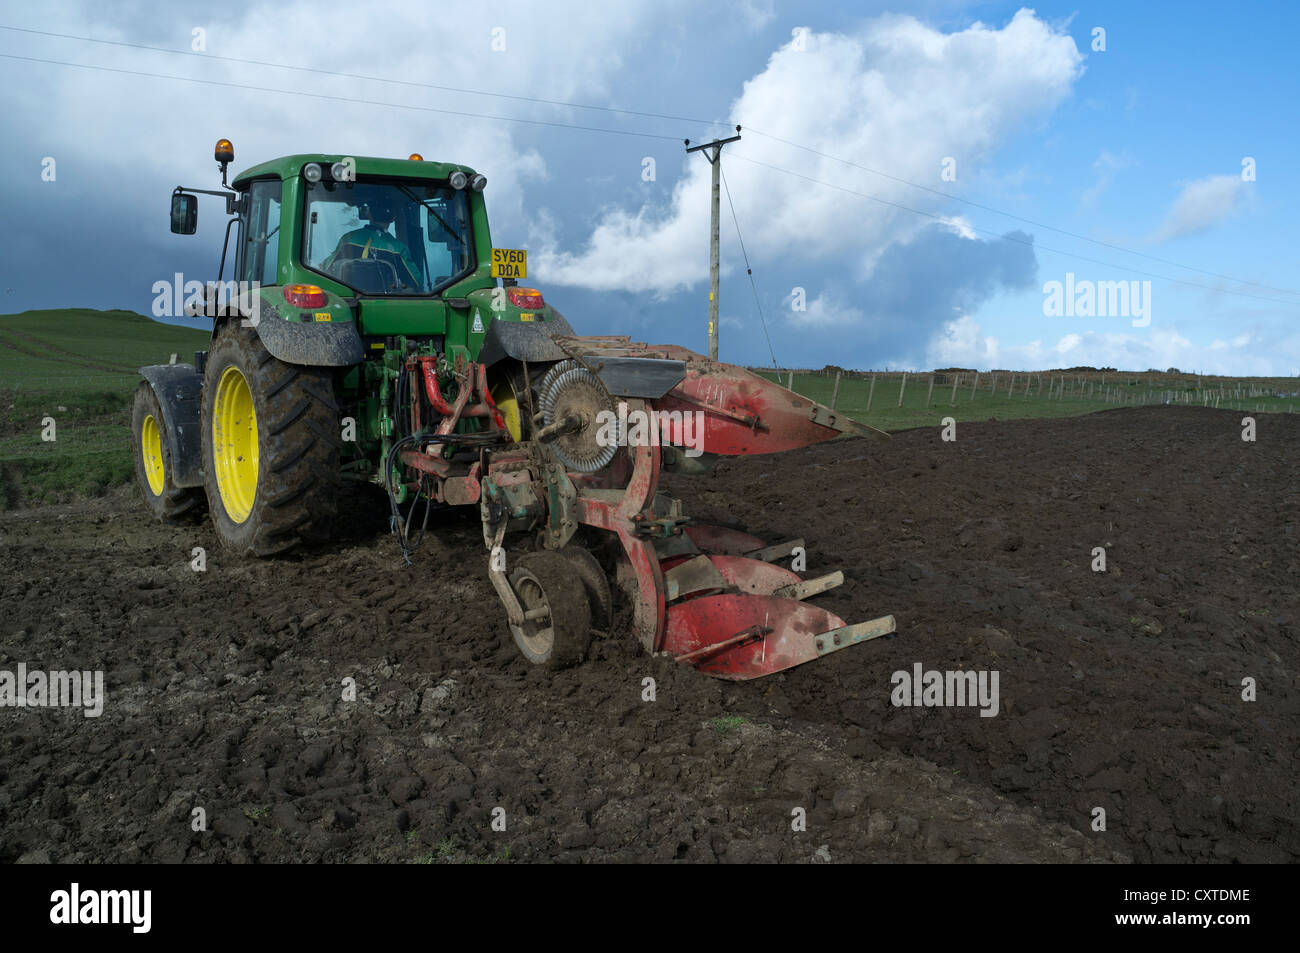 tracteur dh John Deere UK tracing charrue labour champs agricoles écosse tractage sol Banque D'Images